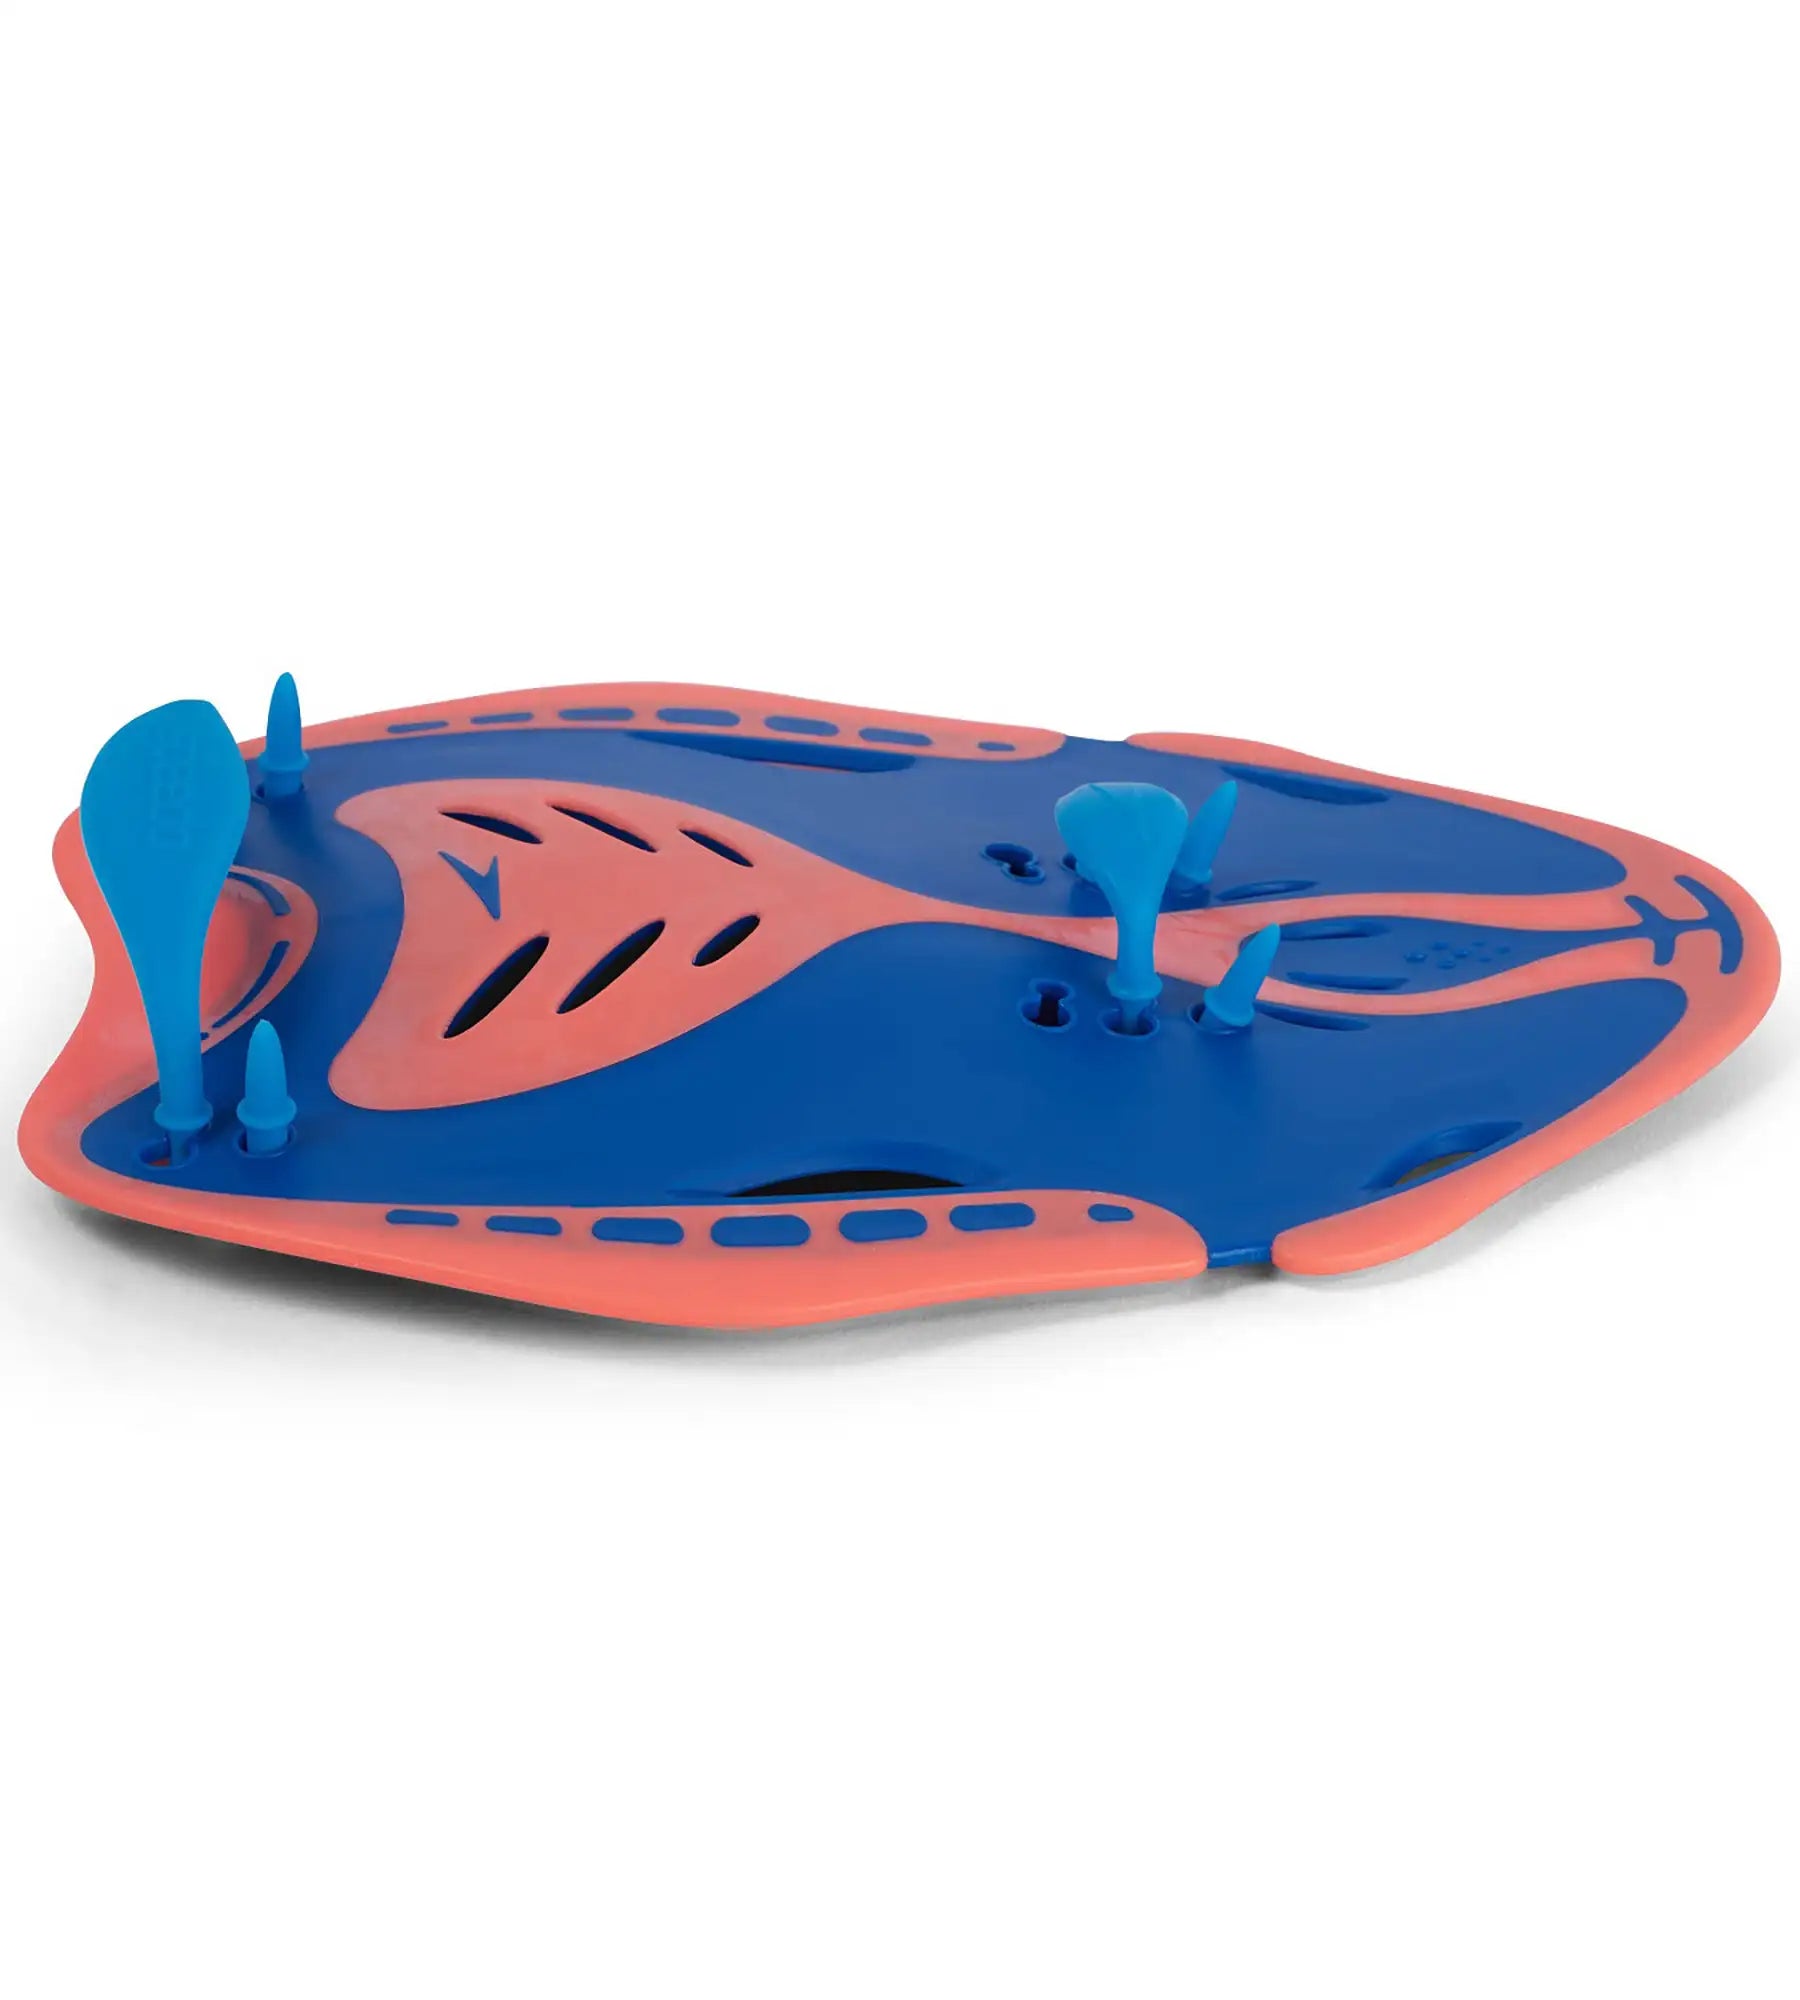 Unisex Adult Endurance Biofuse Power Paddle Training Aids -  Blue & Orange_4